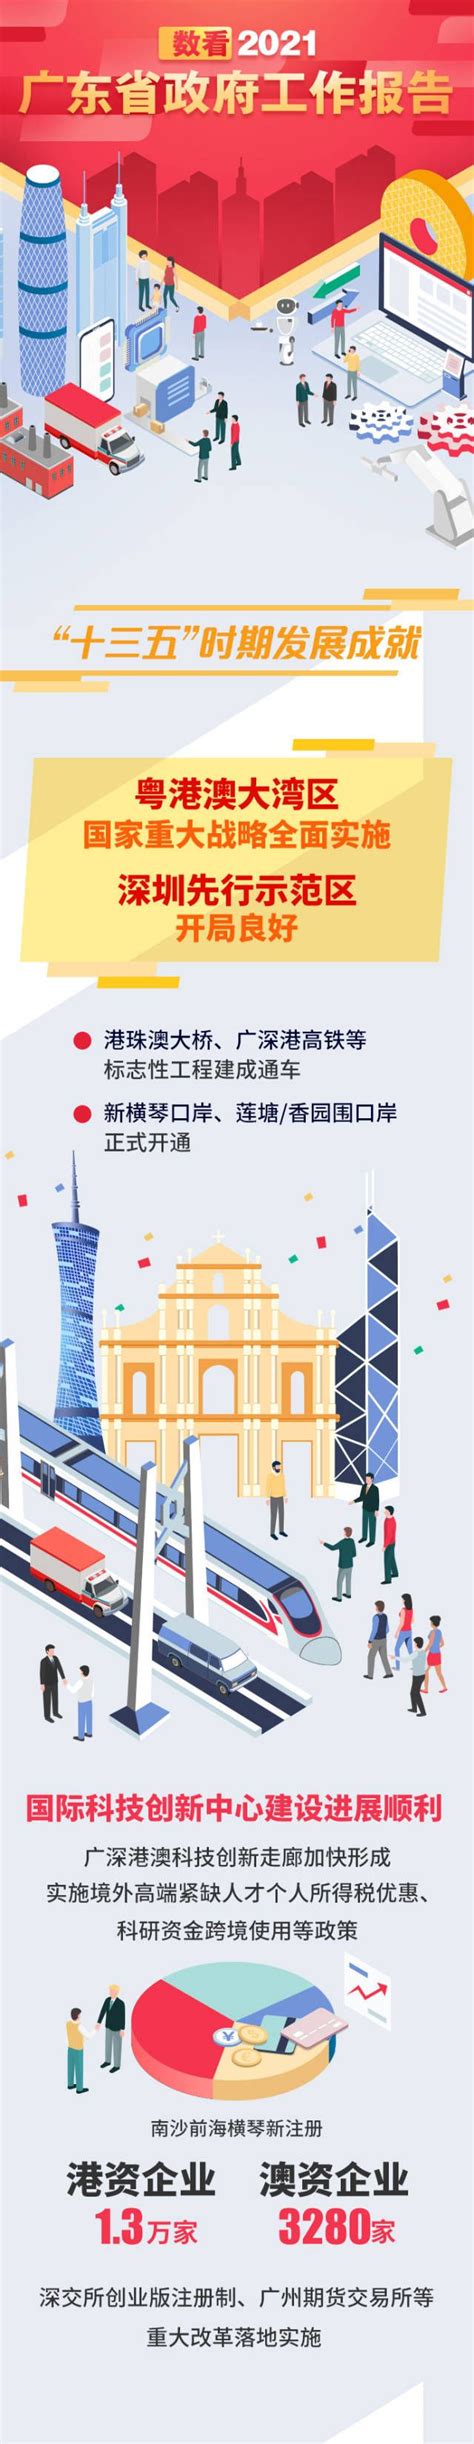 郑州市政府工作报告晒出2022发展“成绩单” 中钢网再次被写入报告中 - 中国网